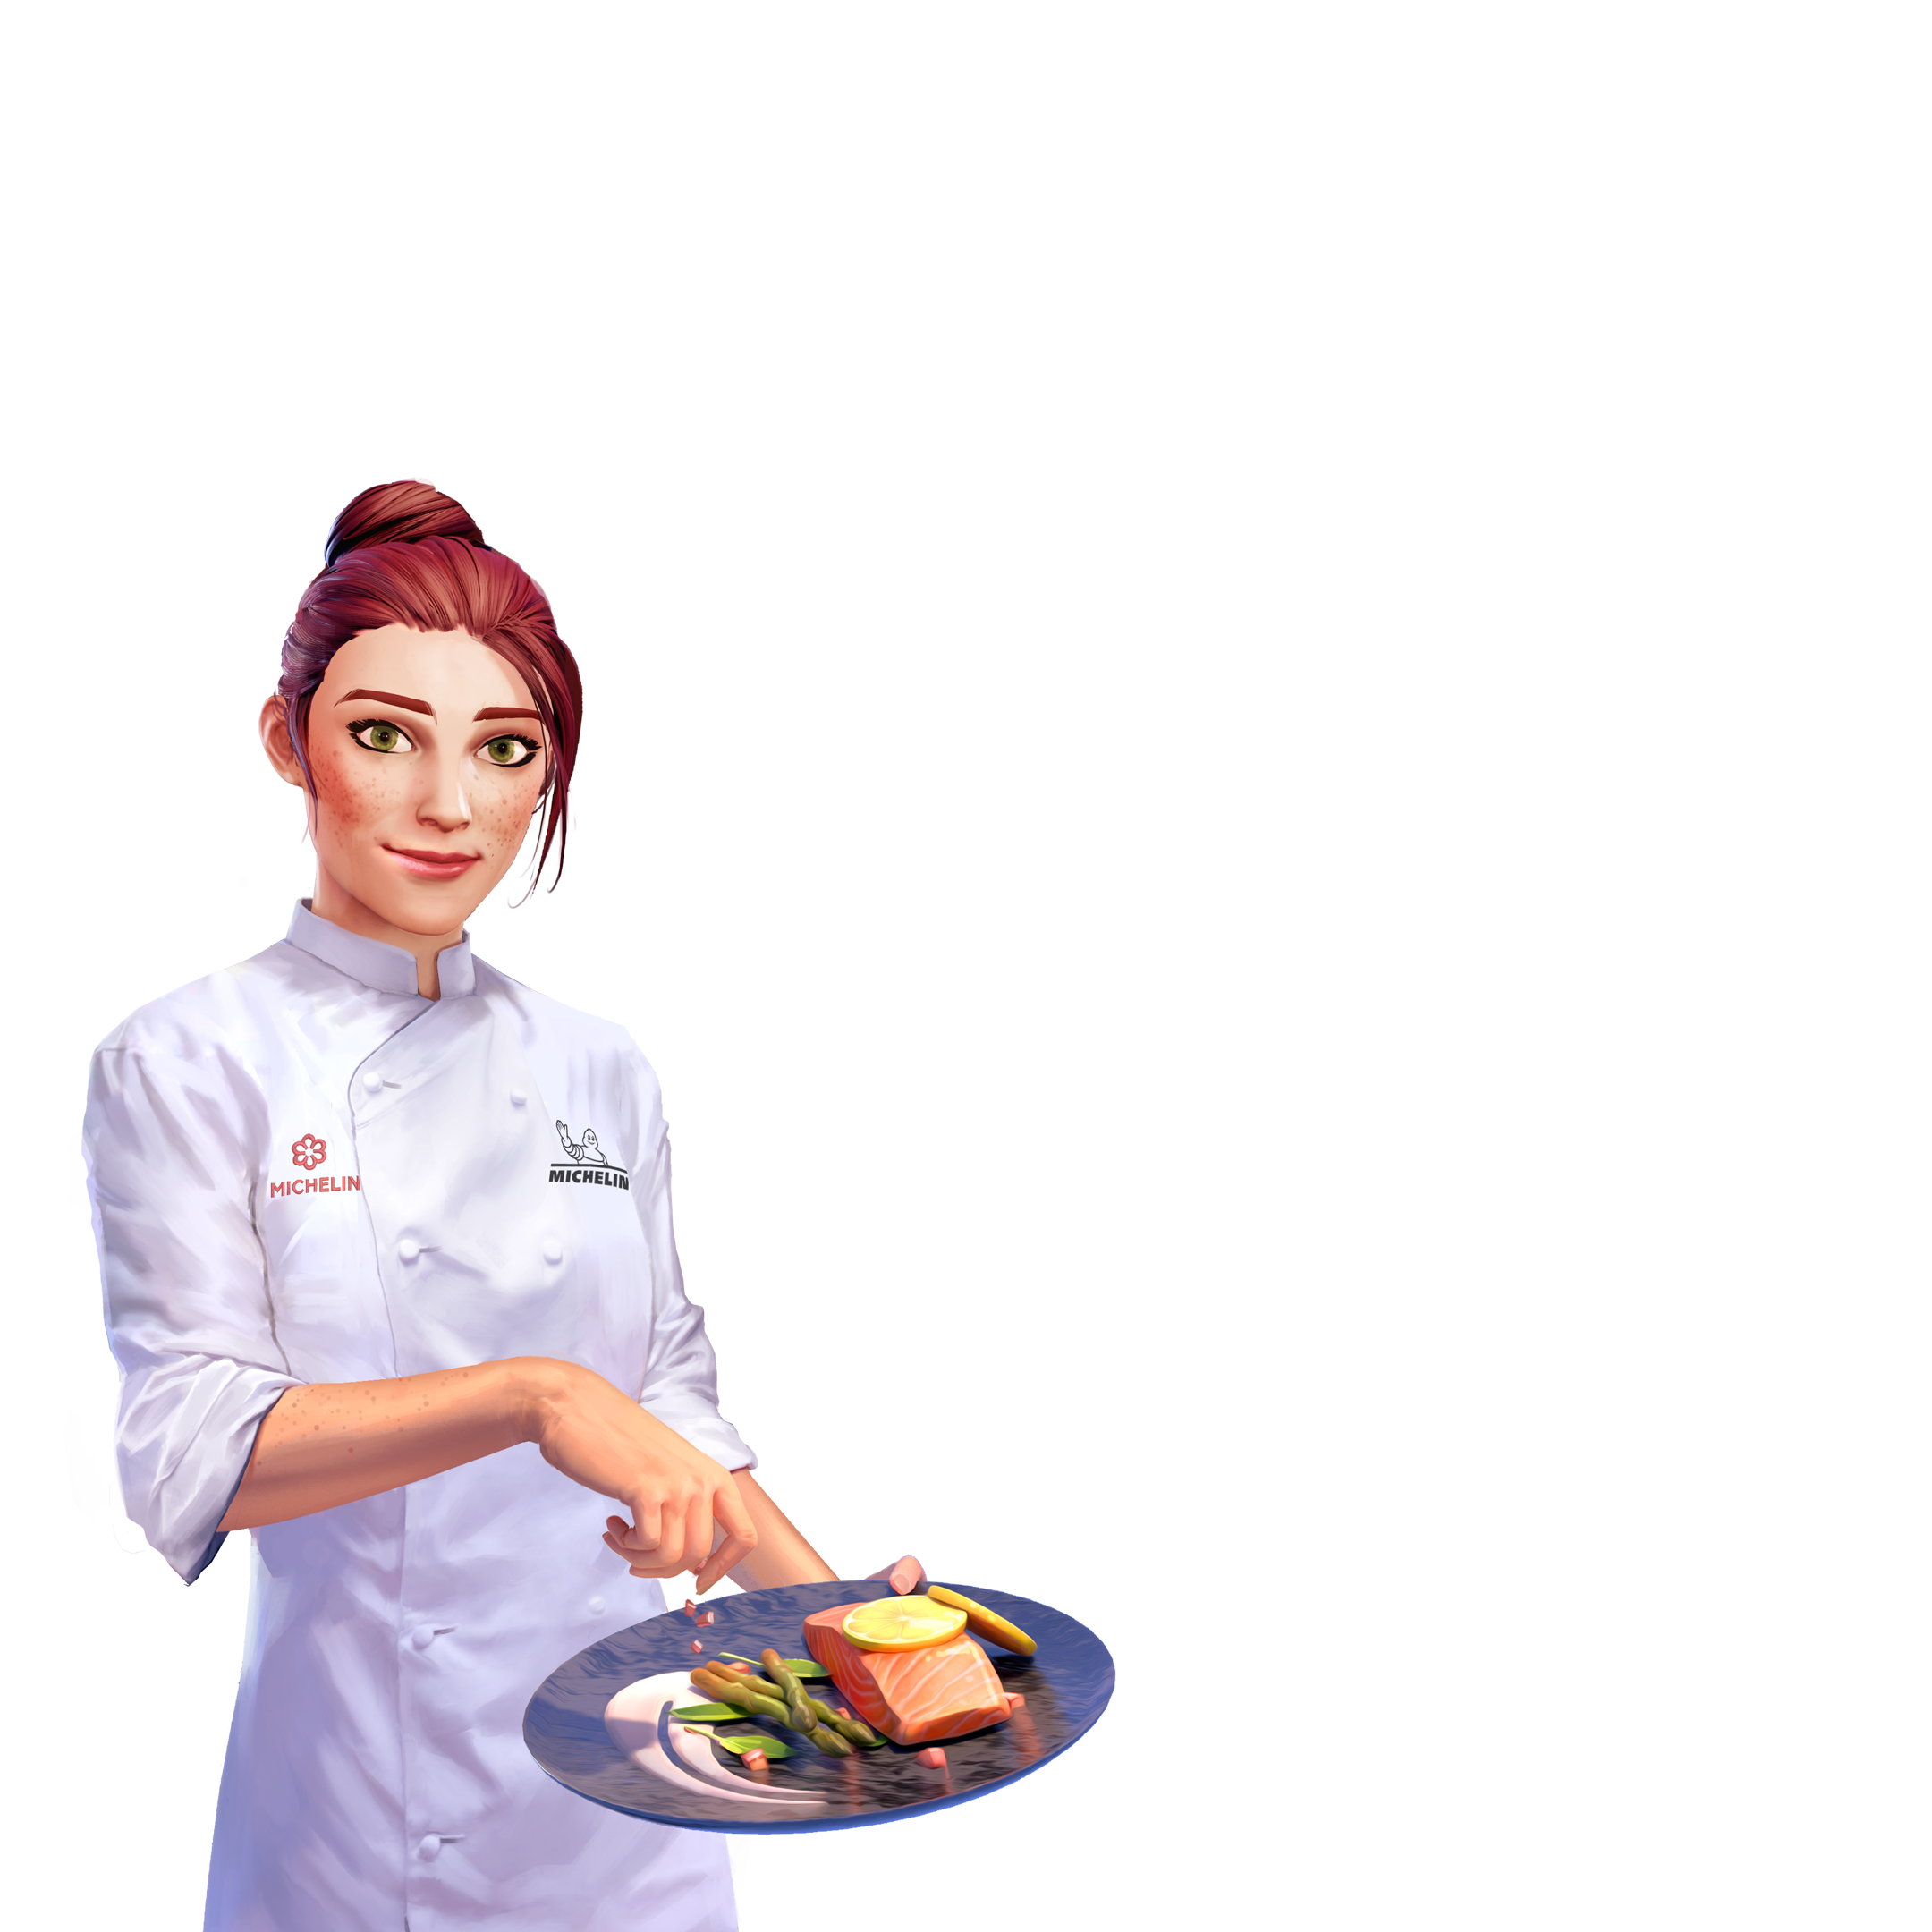 Chef Life A Restaurant Simulator (PS4) preço mais barato: 27,99€